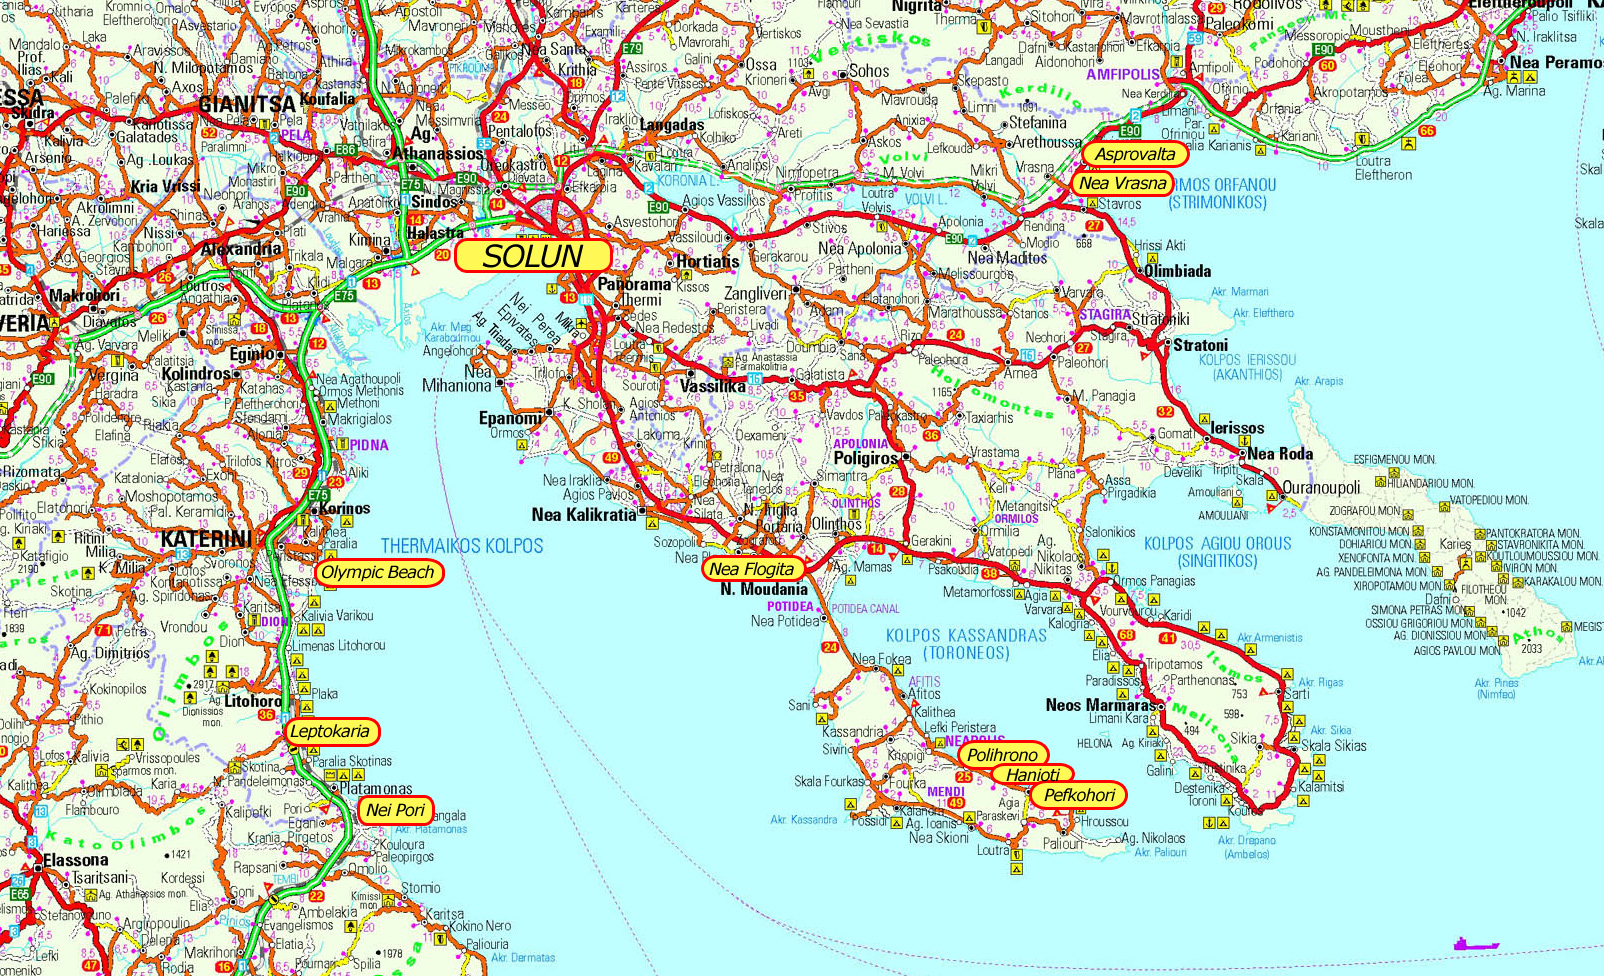 grcka turisticka mapa Američke studije u Grčkoj | Lignjoslav's Blog grcka turisticka mapa